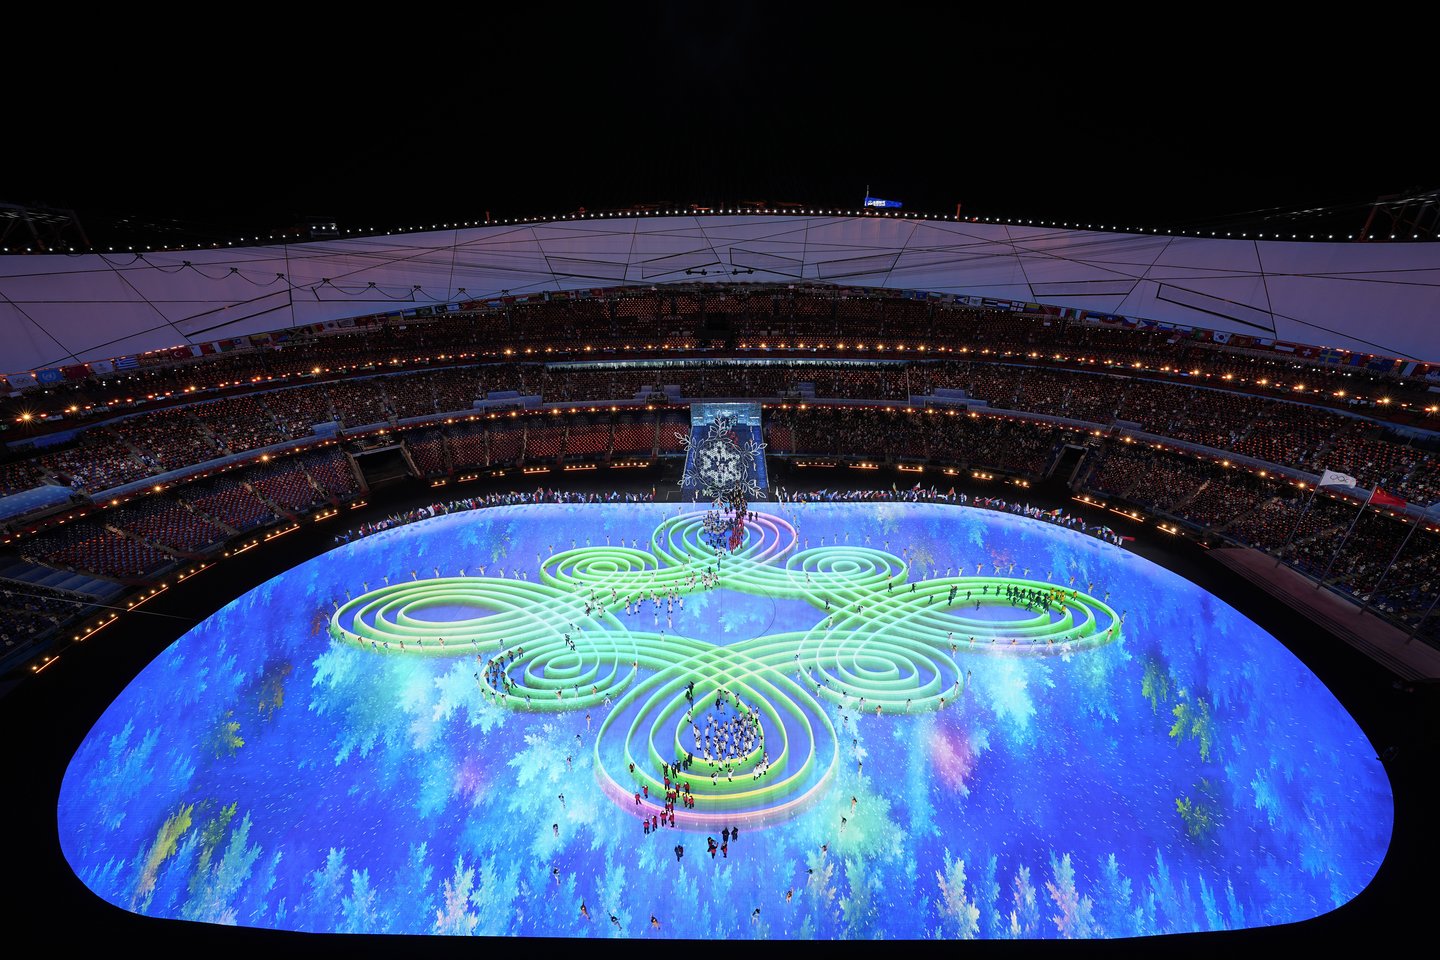  Metų sporto šventė baigta: oficialiai užbaigiamos žiemos olimpinės žaidynės<br> AP/Scanpix nuotr.